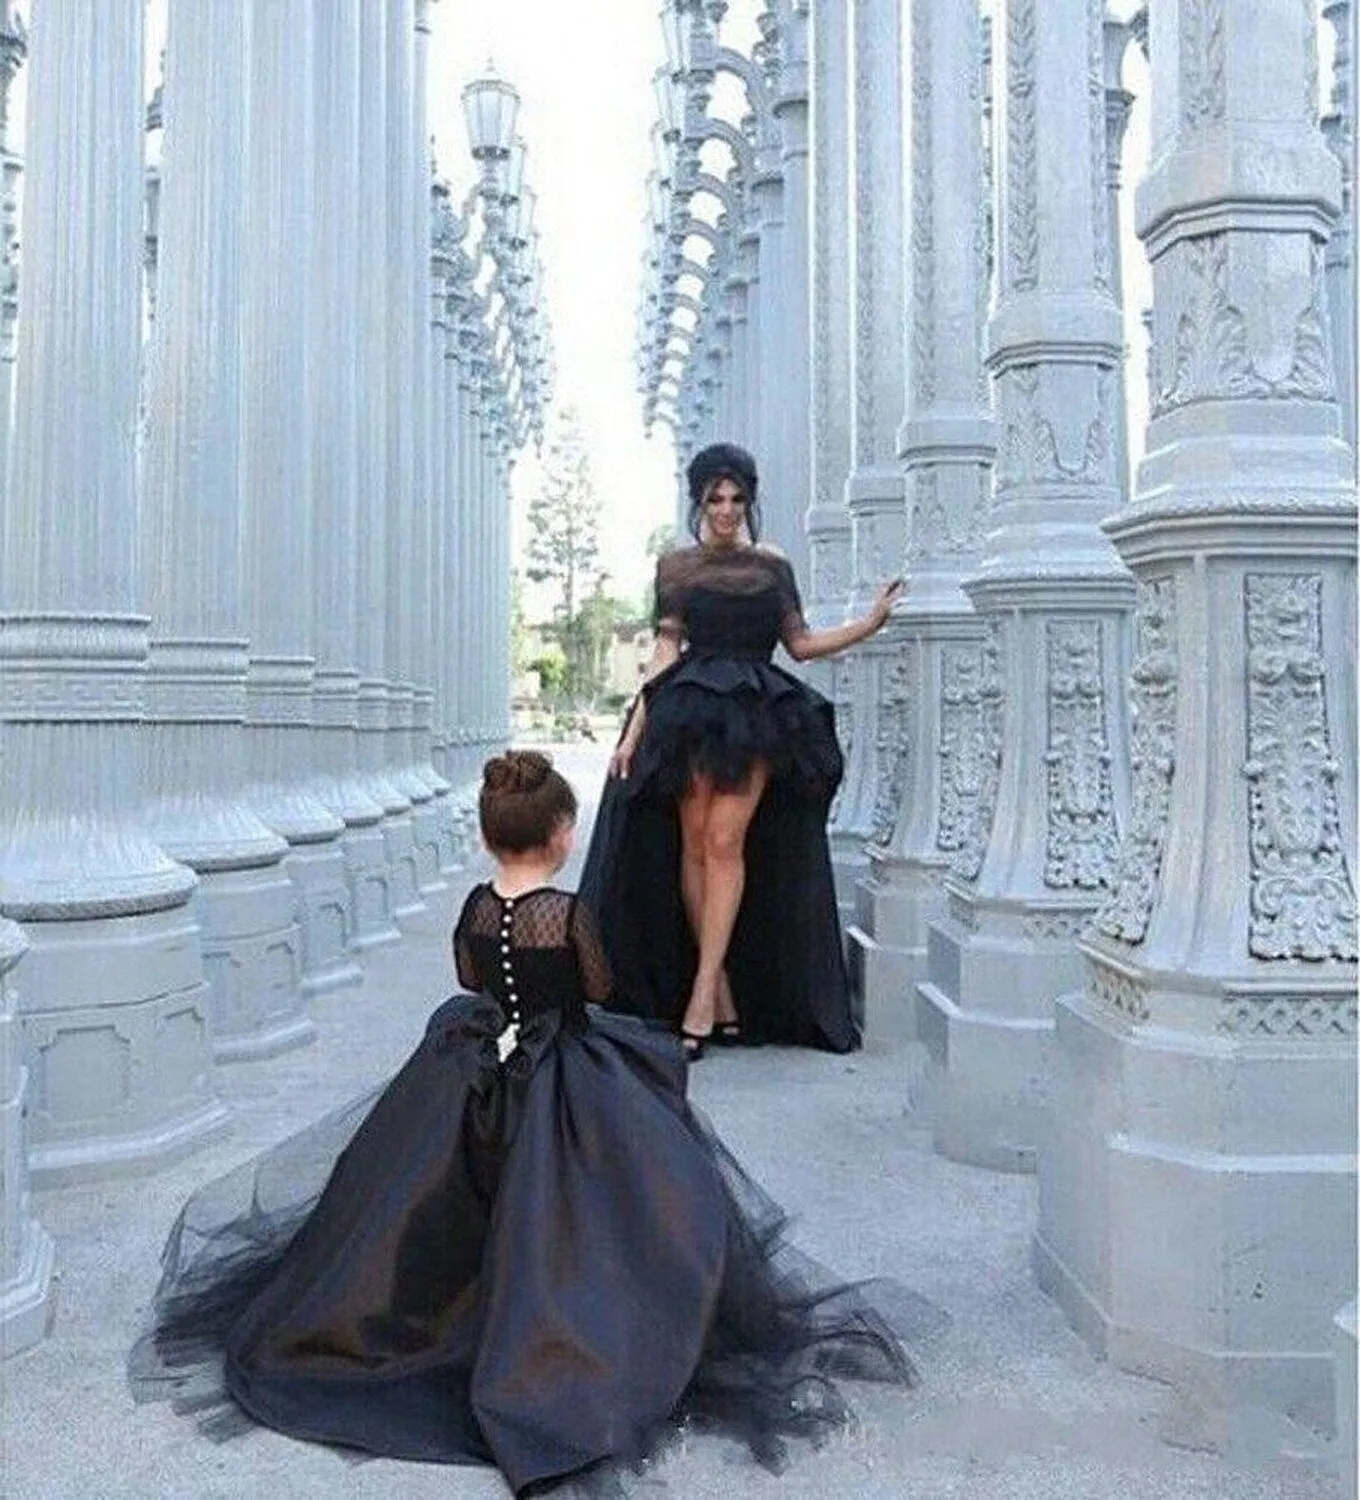 La ragazza di fiore dell'abito di sfera di modo 2019 veste le vestito da pageant nero del vestito da partito delle bambine